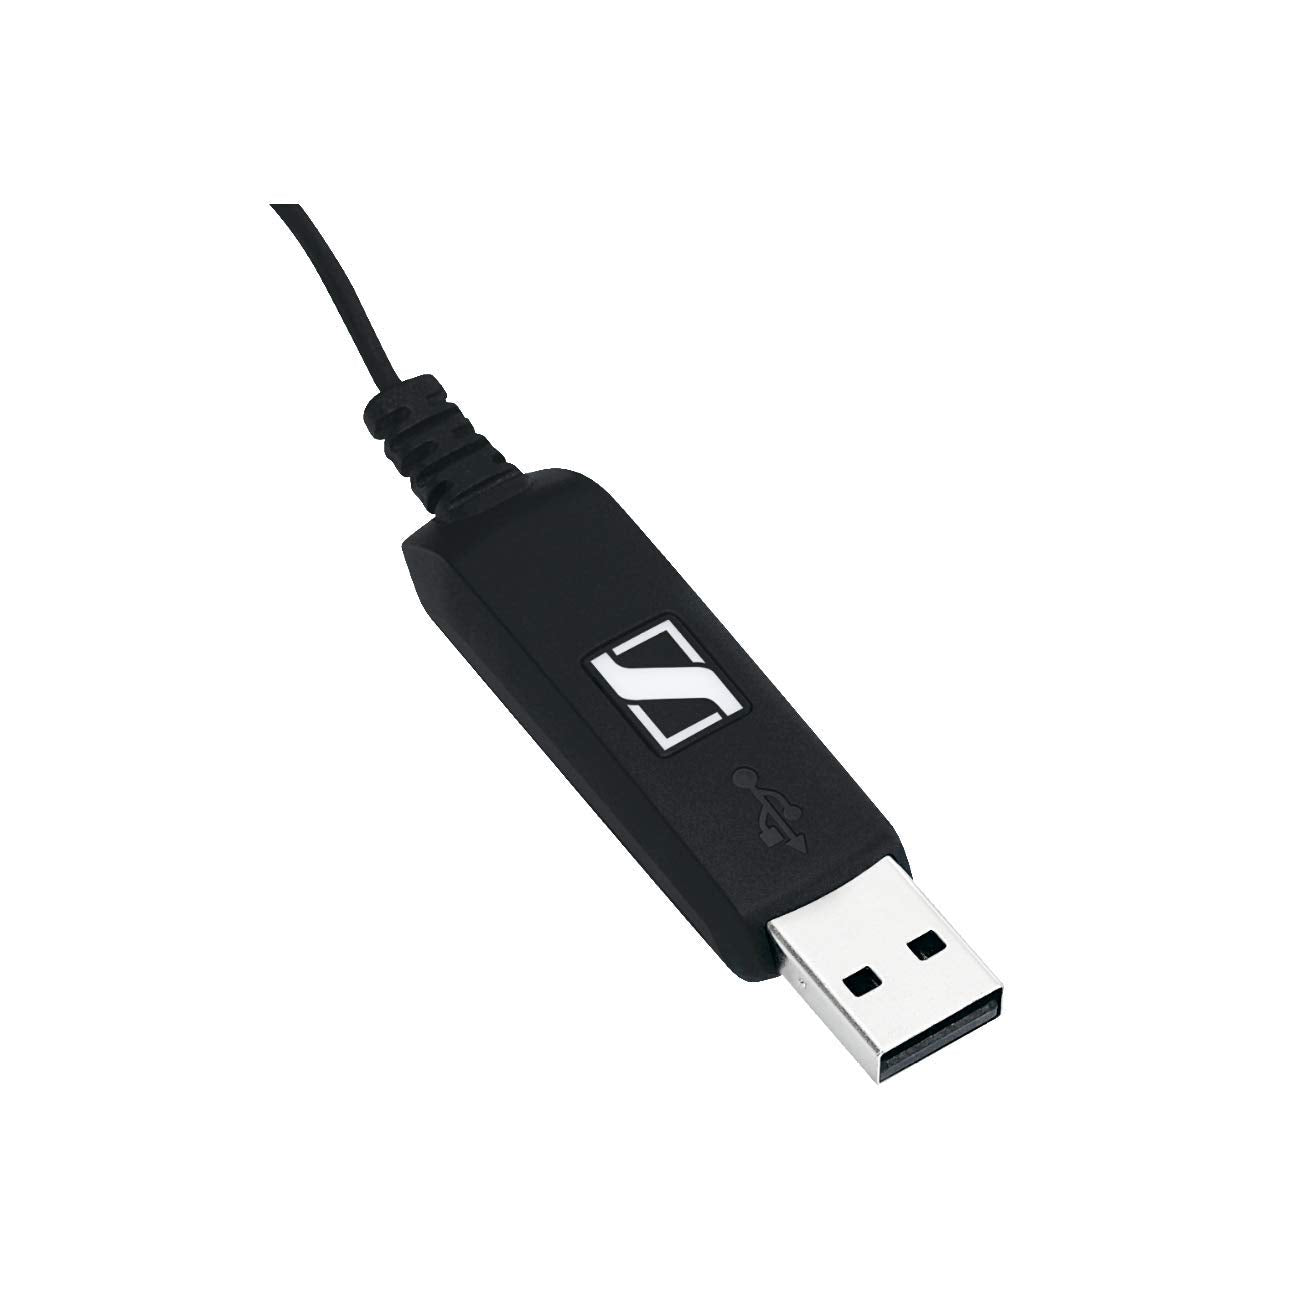 HEADPHONE-SENNHEISER-PC-8-USB